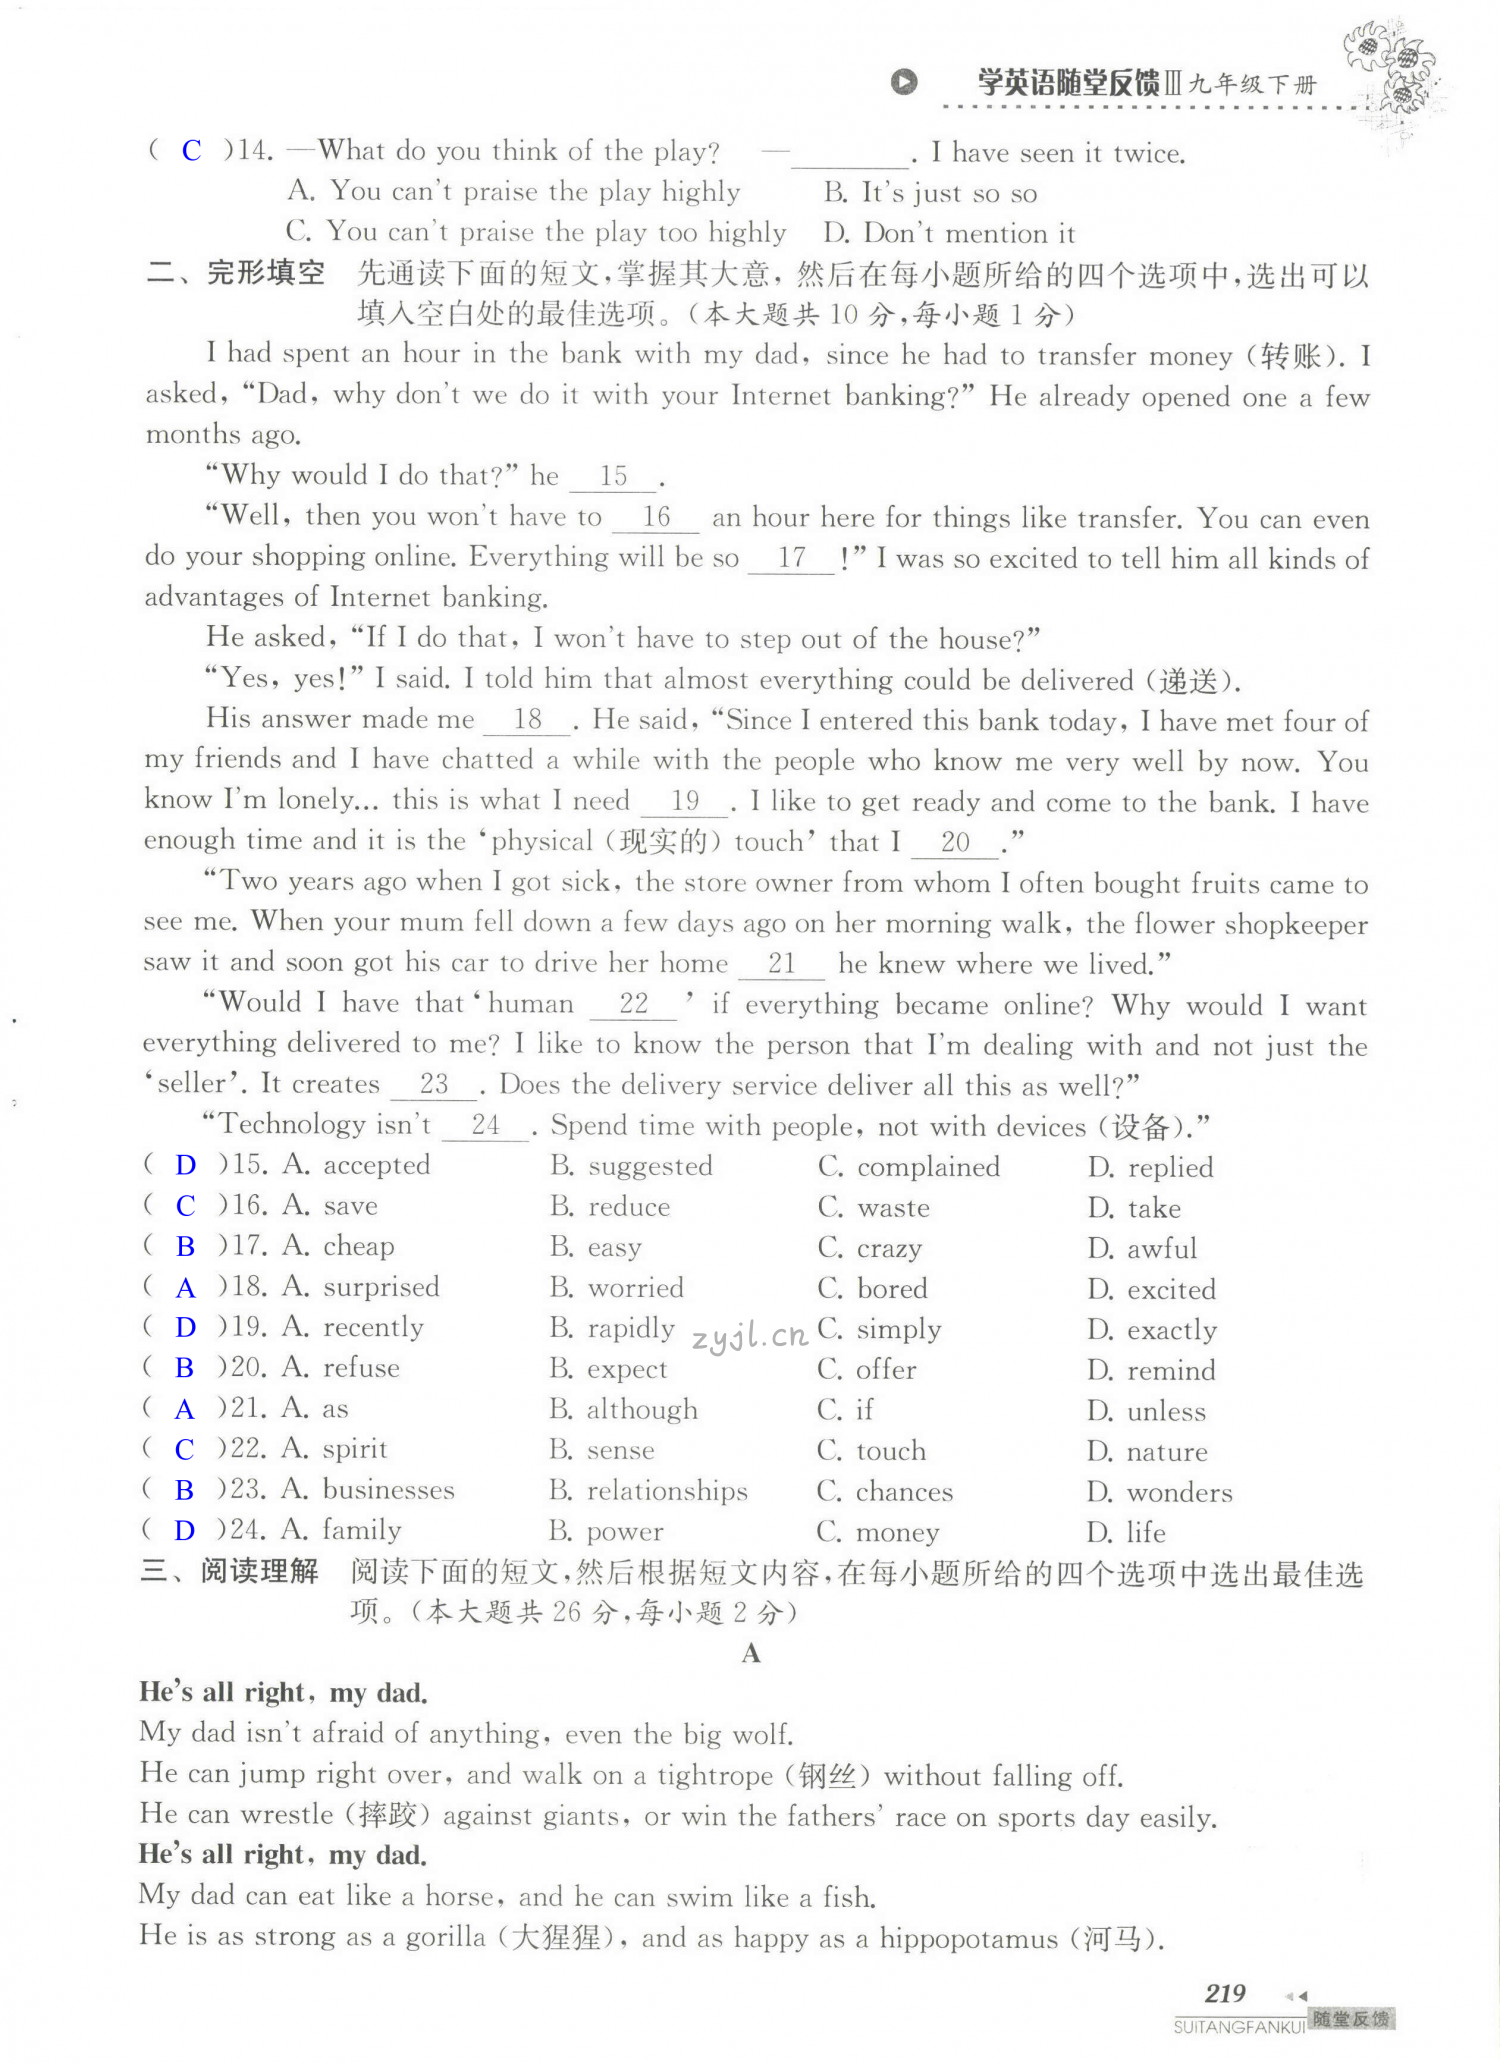 单元综合测试卷 Test for Units 3-4 of 9B - 第219页